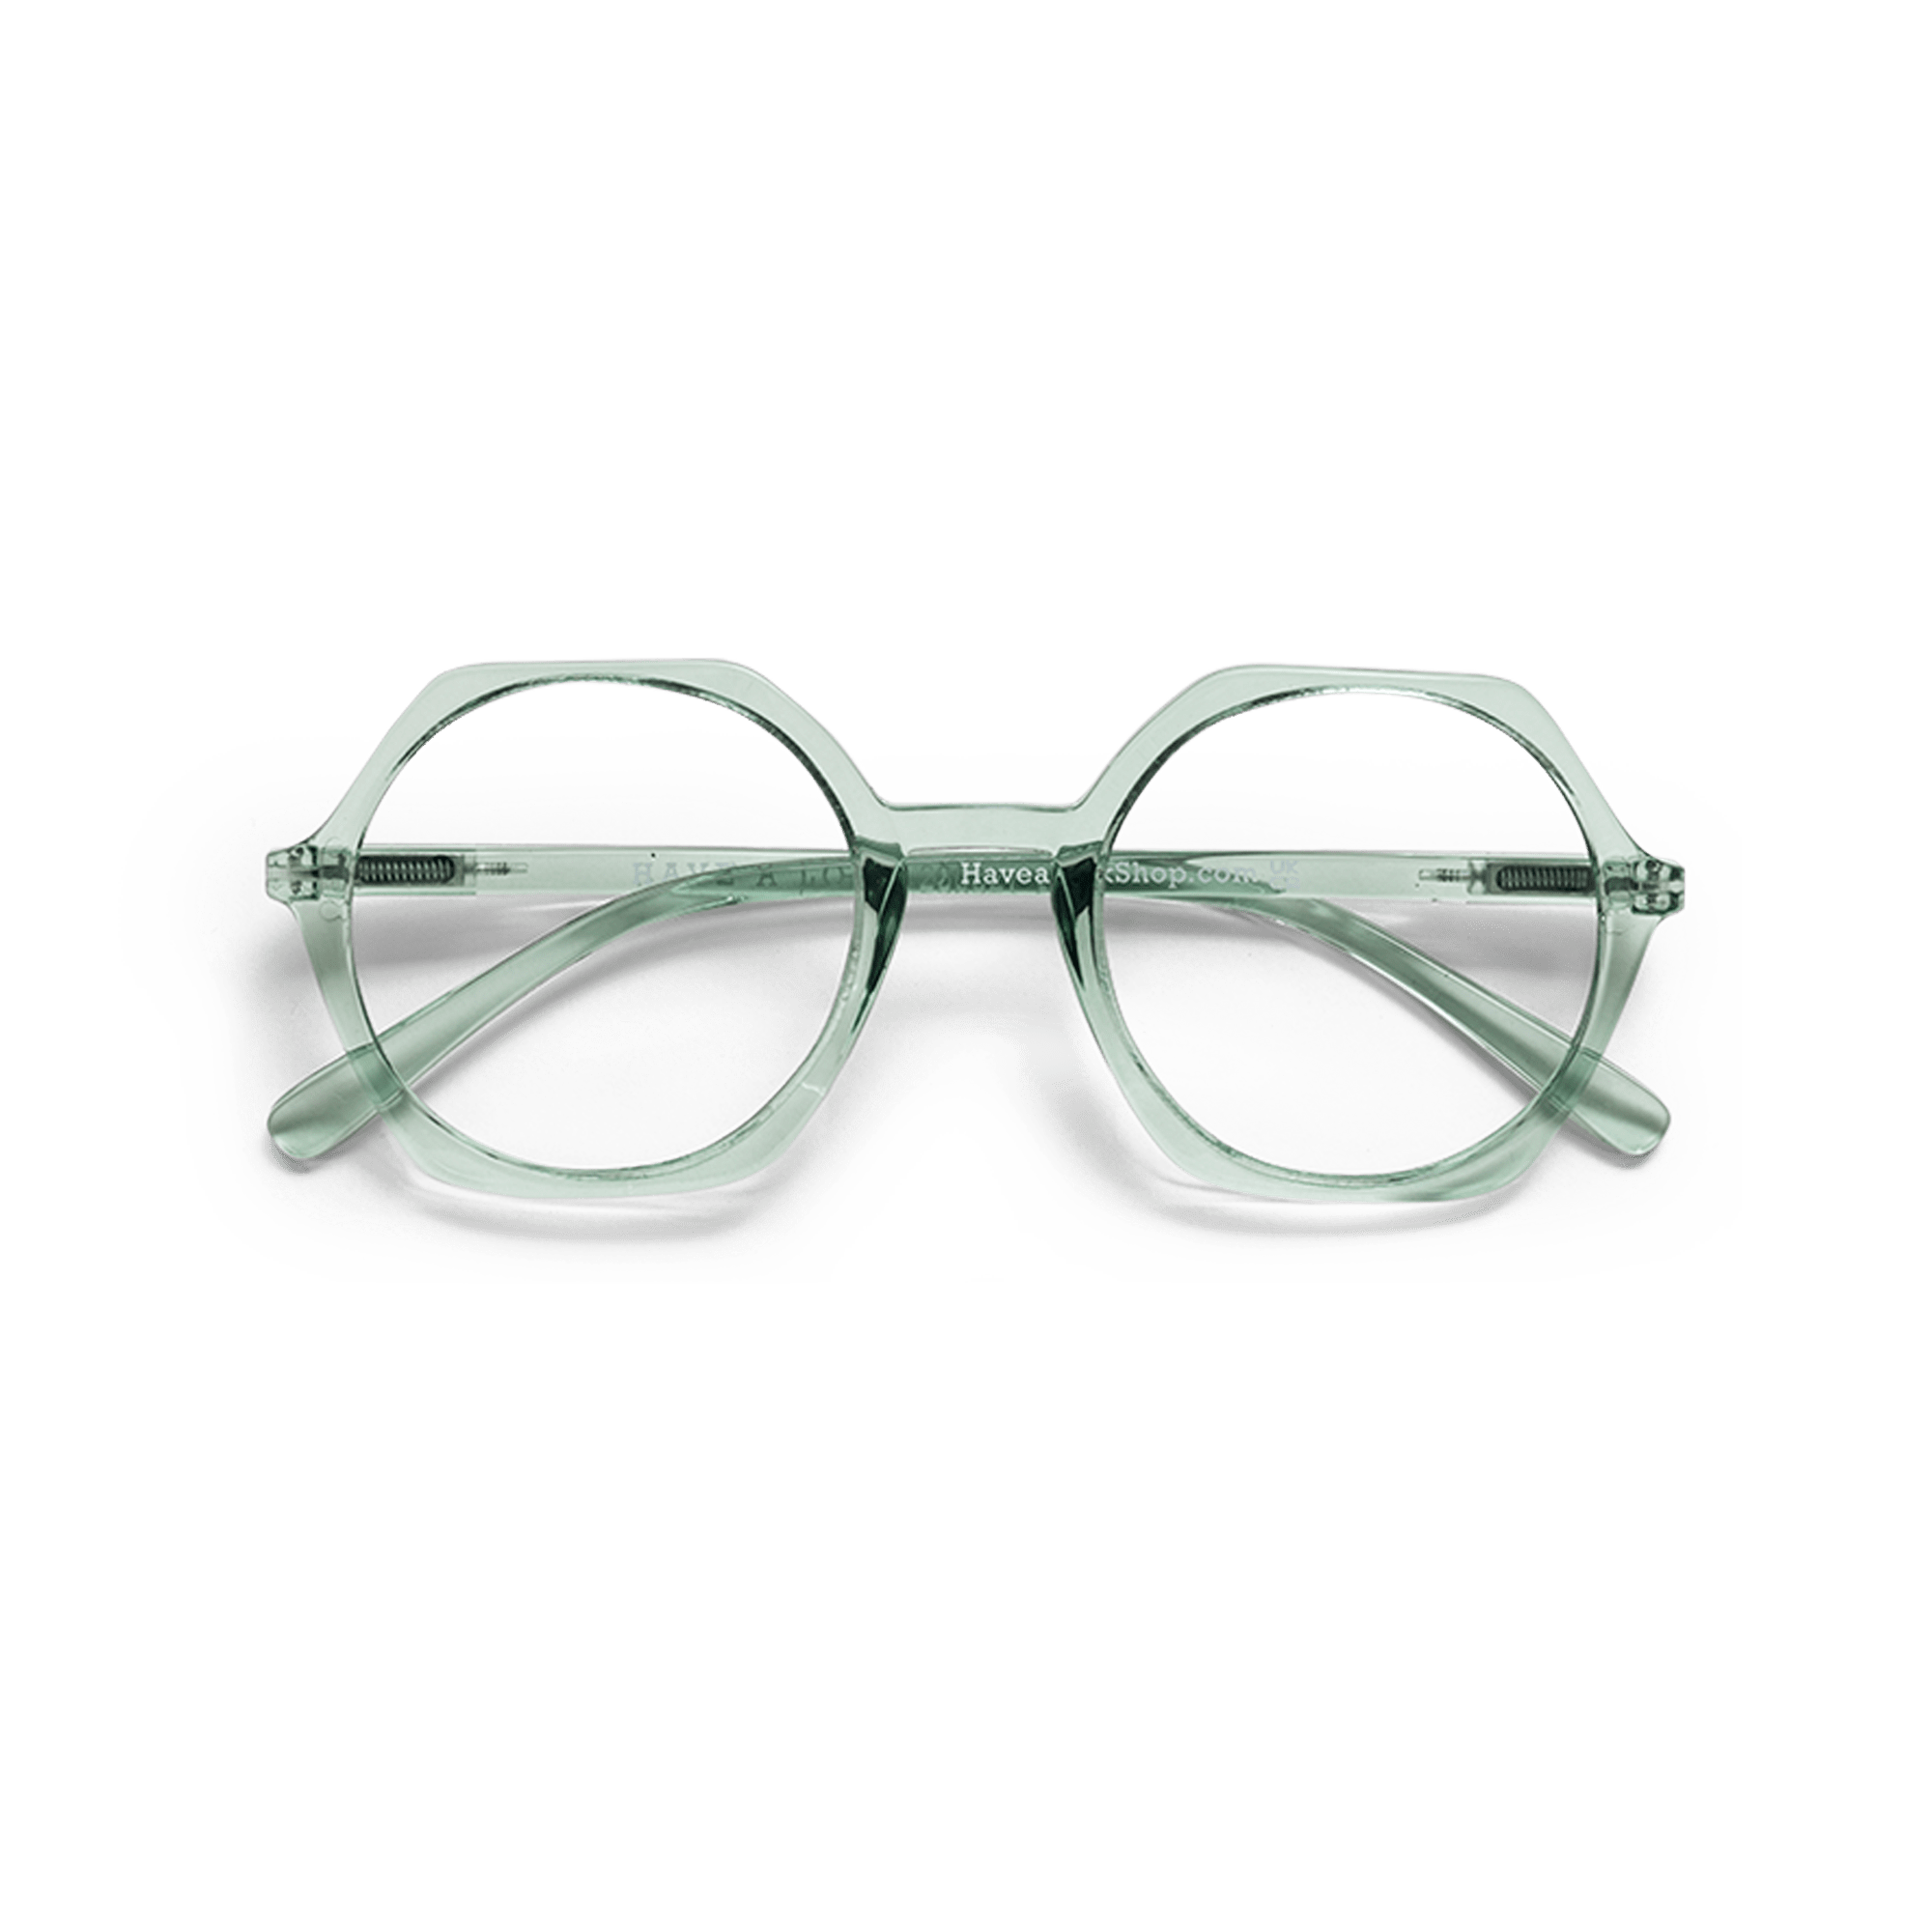 Brillen ohne Stärke Edgy clear green aus Have A Look